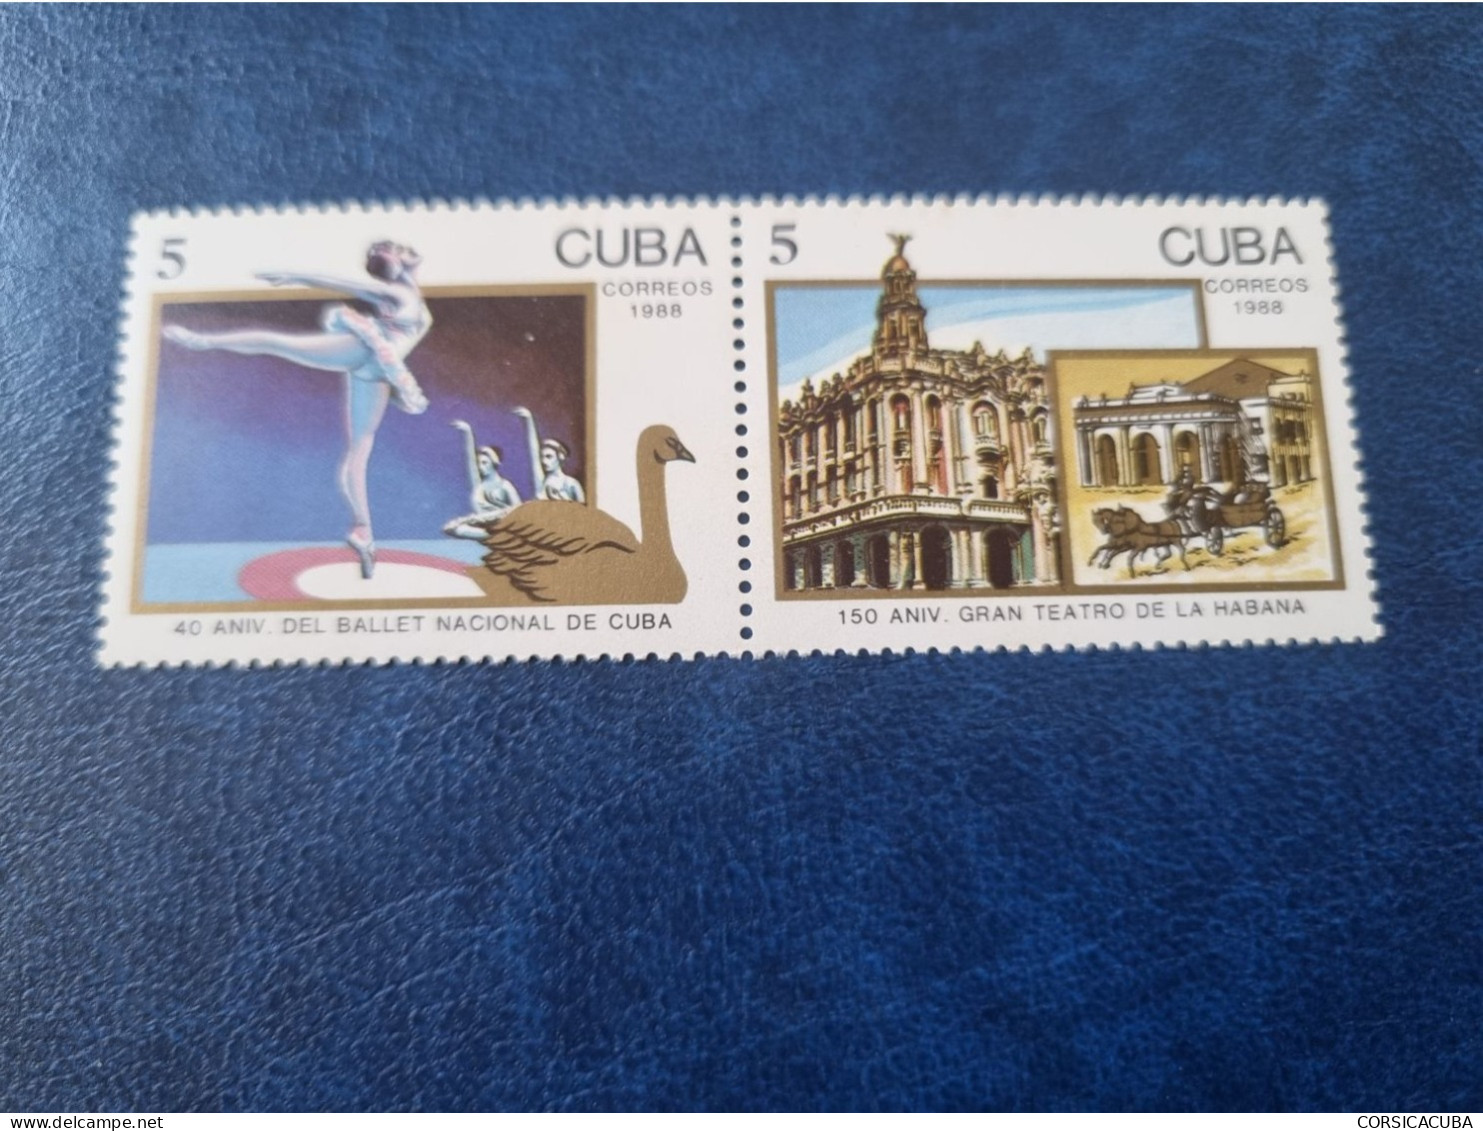 CUBA  NEUF  1988   BALLET  NACIONAL  Y  GRAN  TEATRO  //  PARFAIT  ETAT  //  1er  CHOIX  // - Ongebruikt